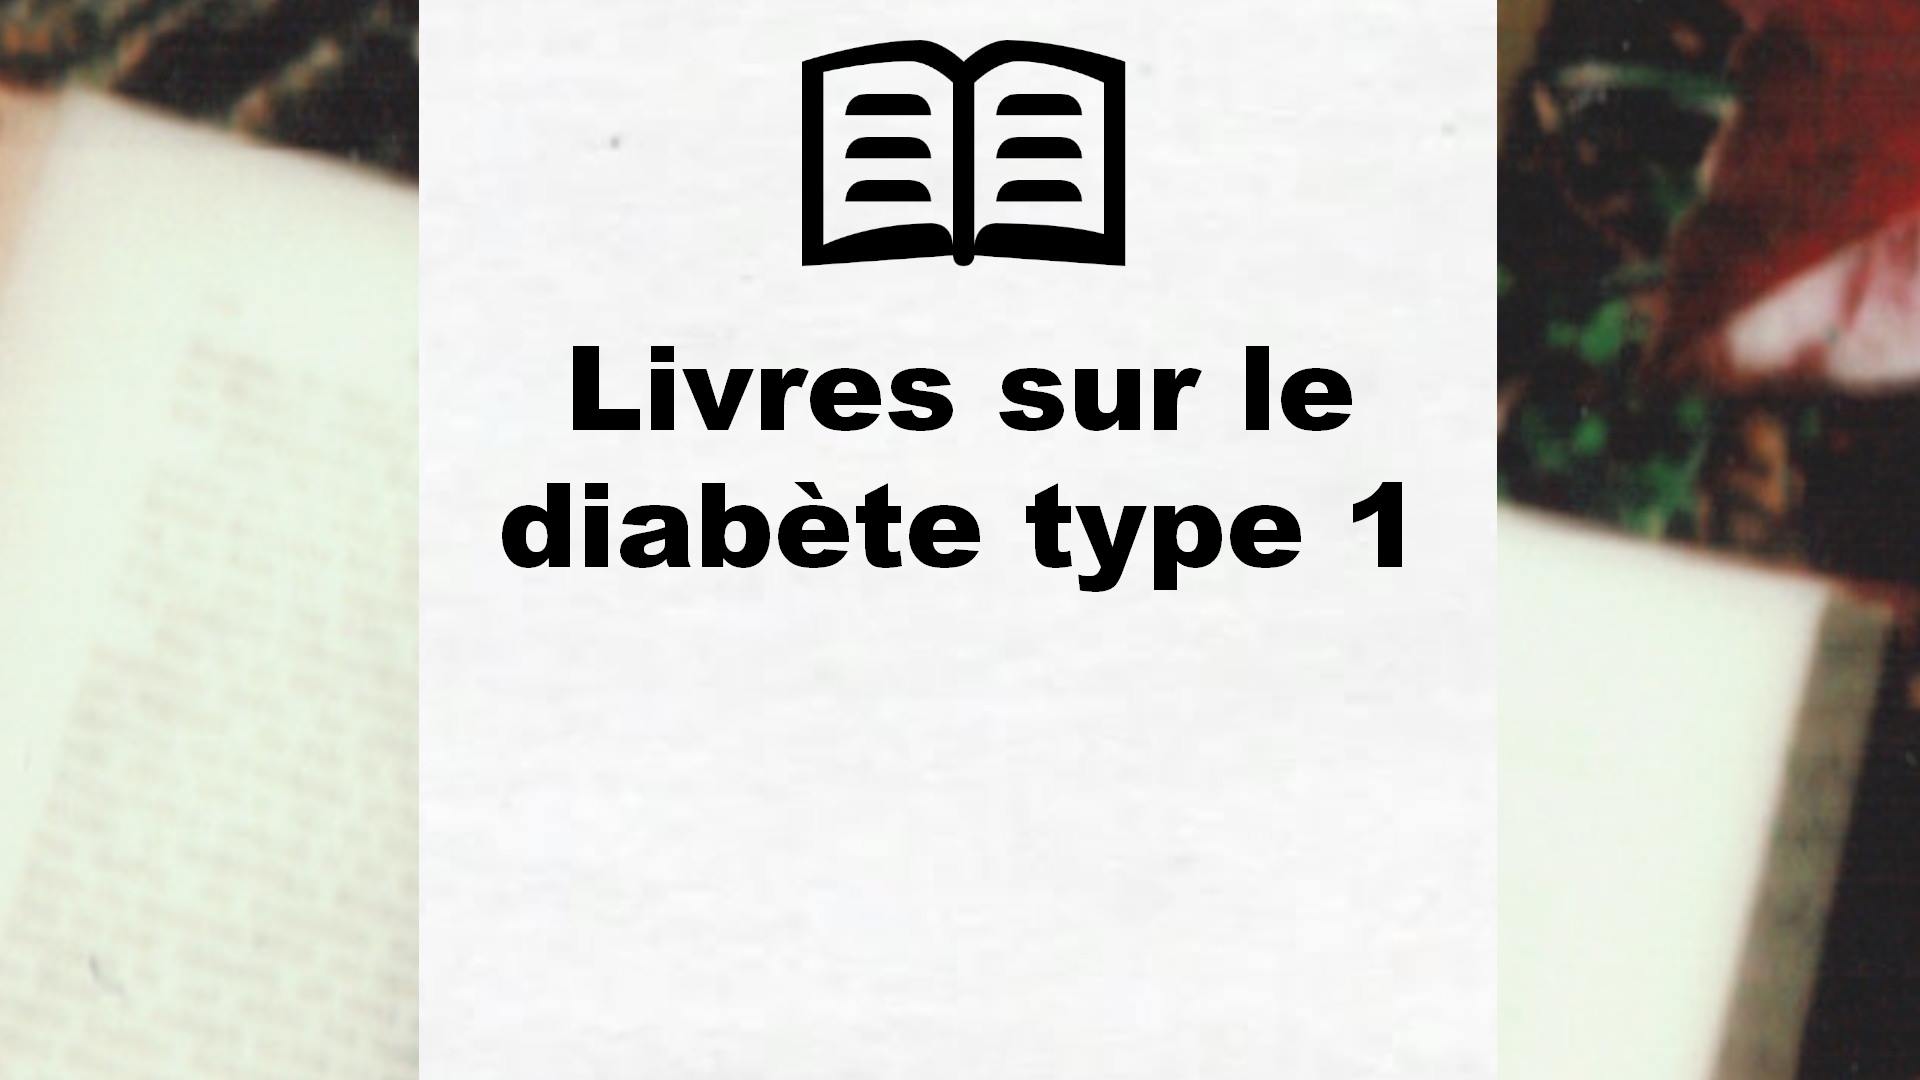 Livres sur le diabète type 1